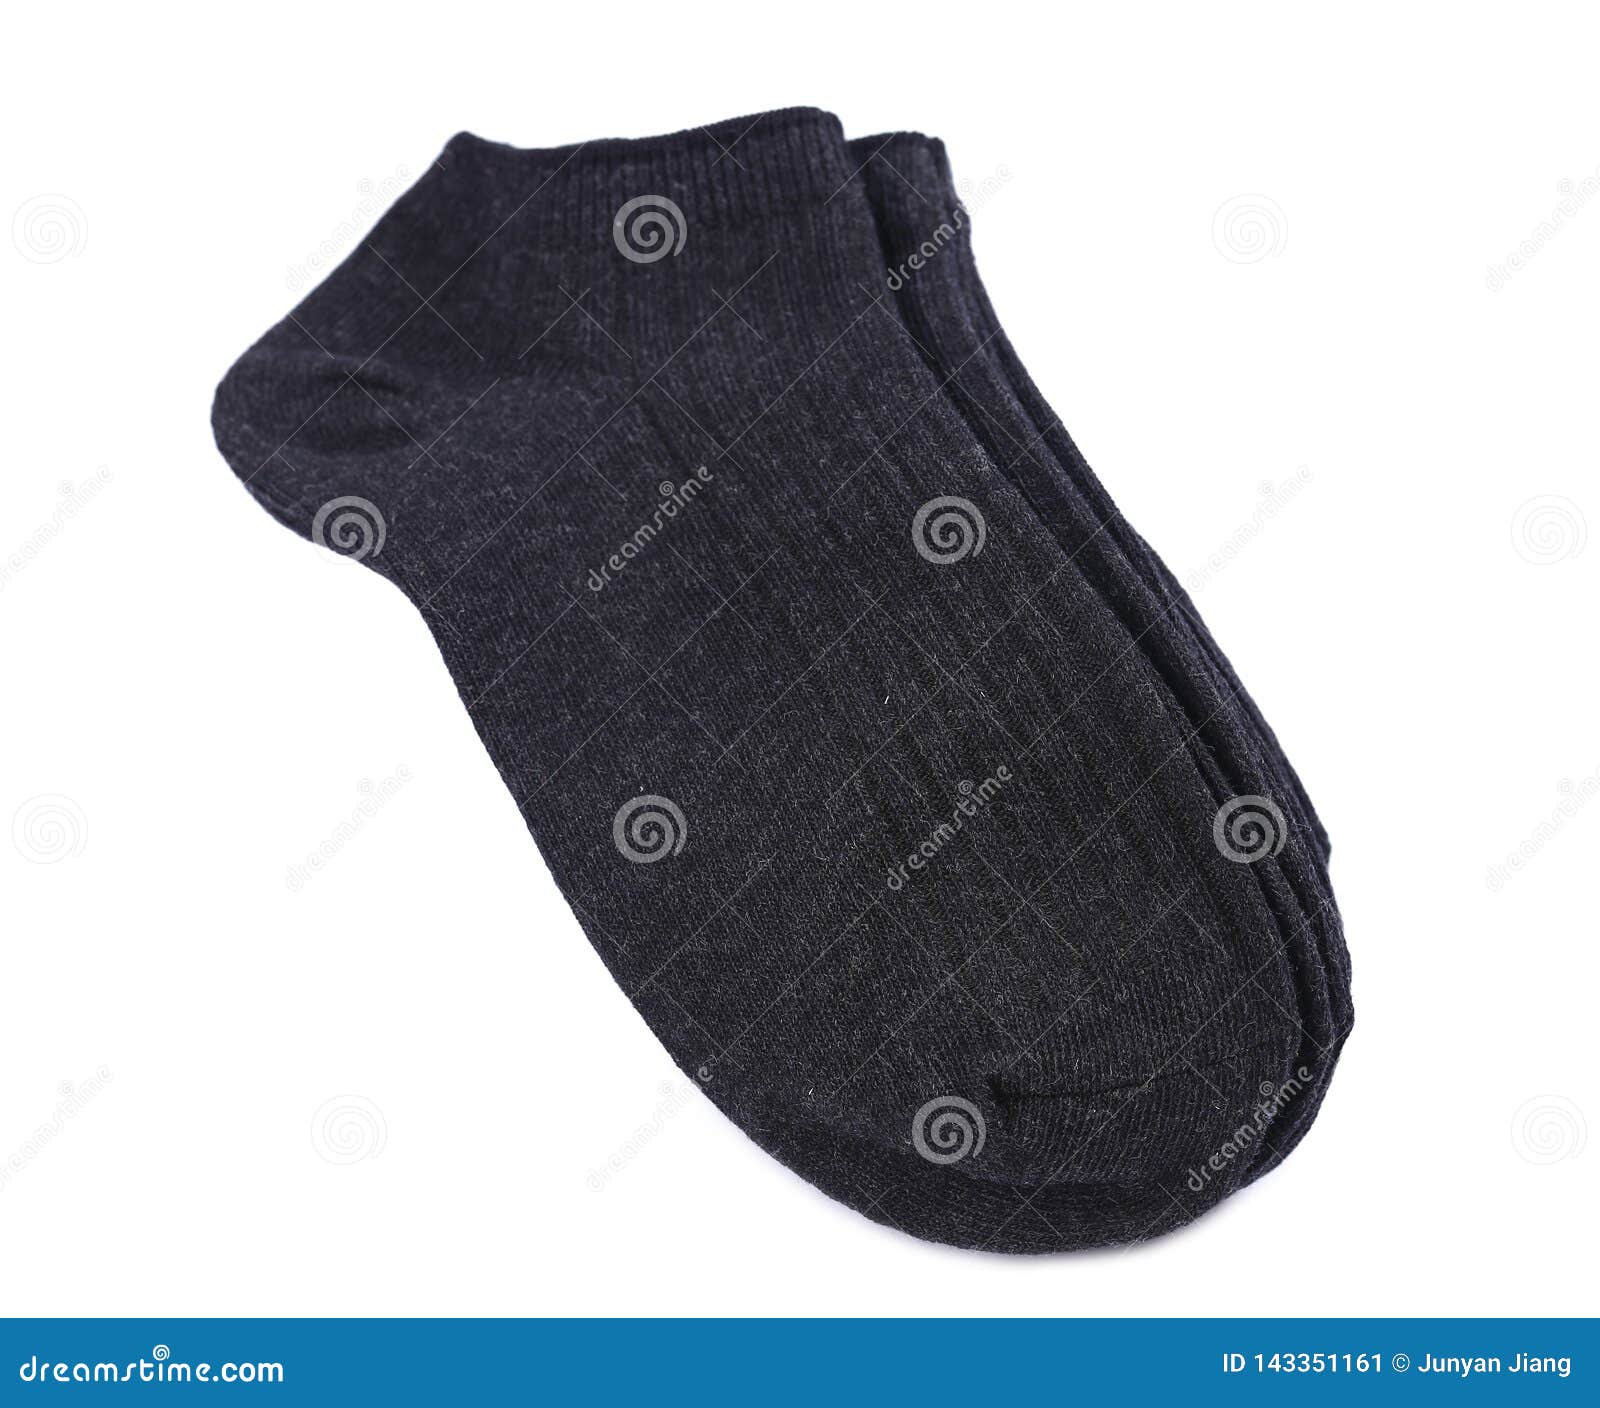 Black socks stock image. Image of group, isolated, fashionable - 143351161